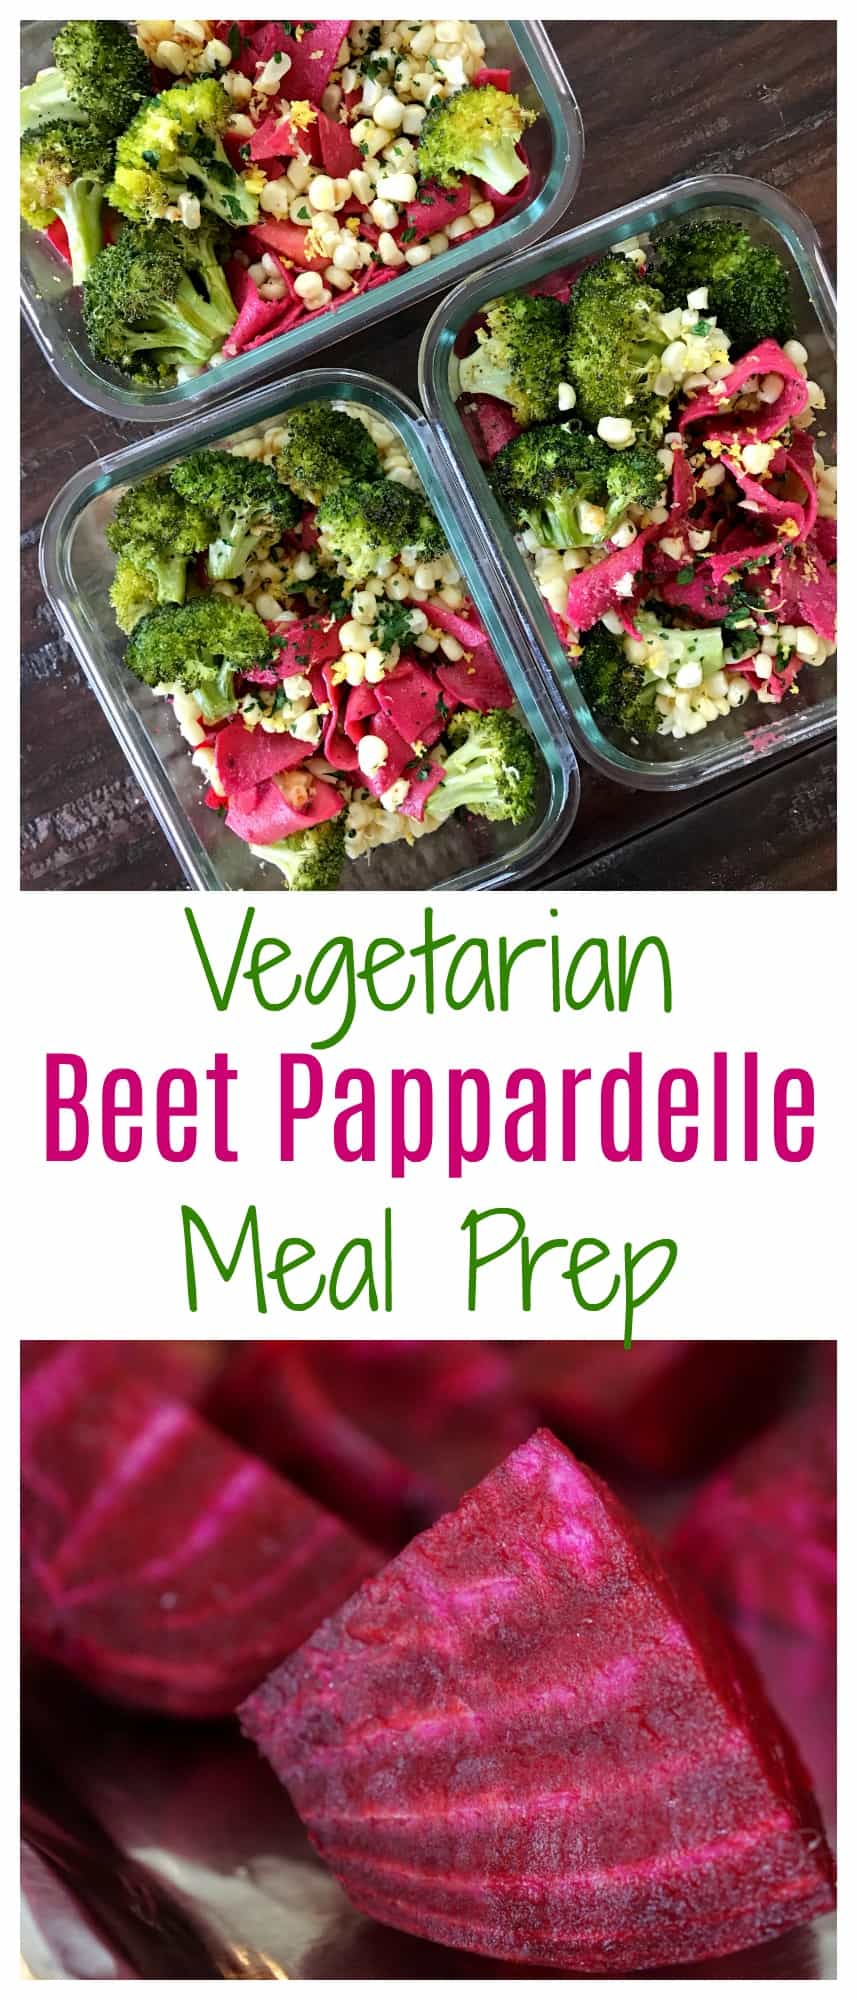 Vegetarian Beet Pappardelle Meal Prep